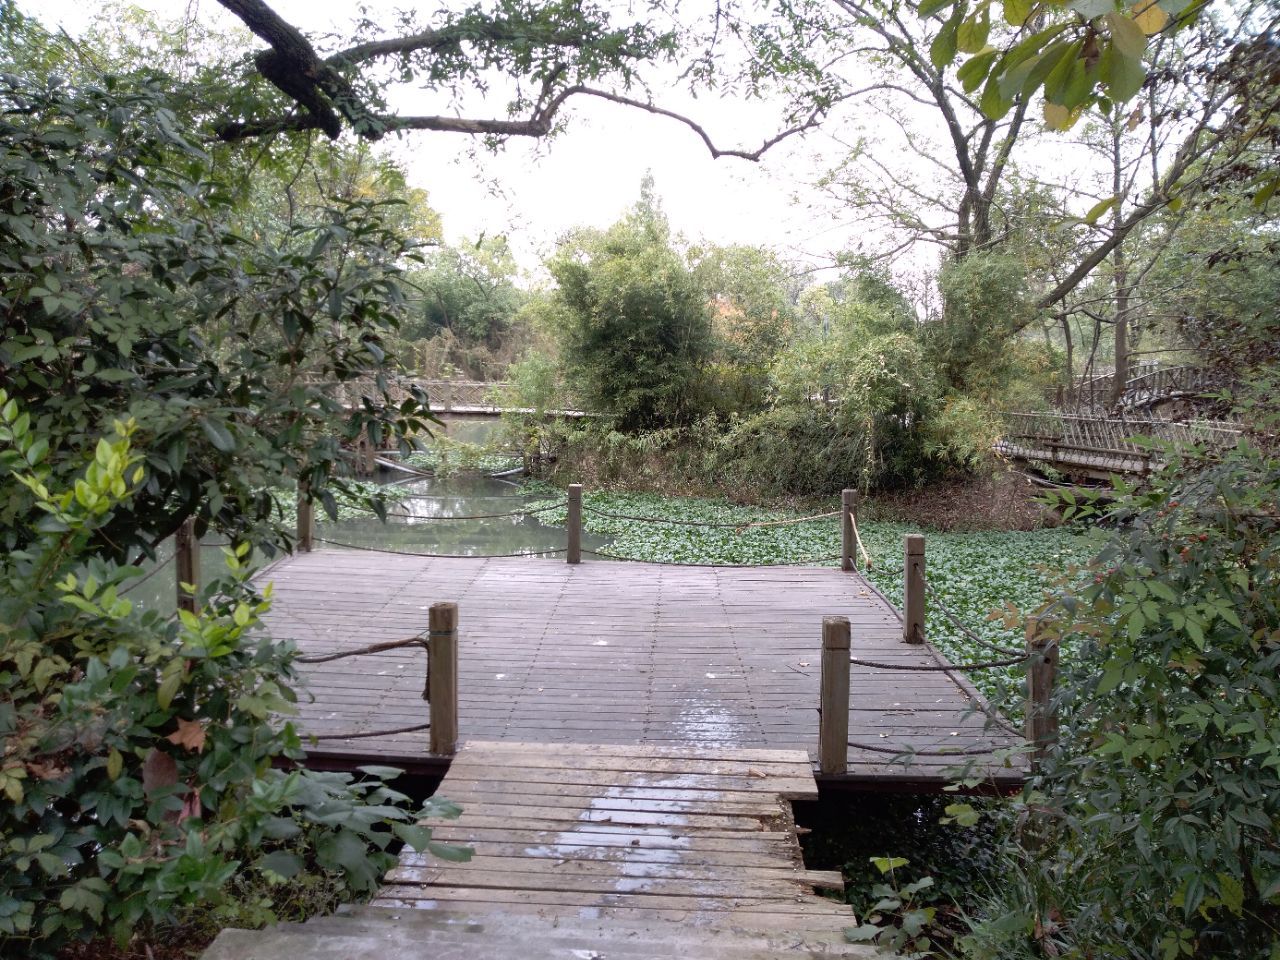 【携程攻略】杭州西溪国家湿地公园景点,有免费的观光区和收费的观光区。 免费的观光区延福堤两面展开，福堤…